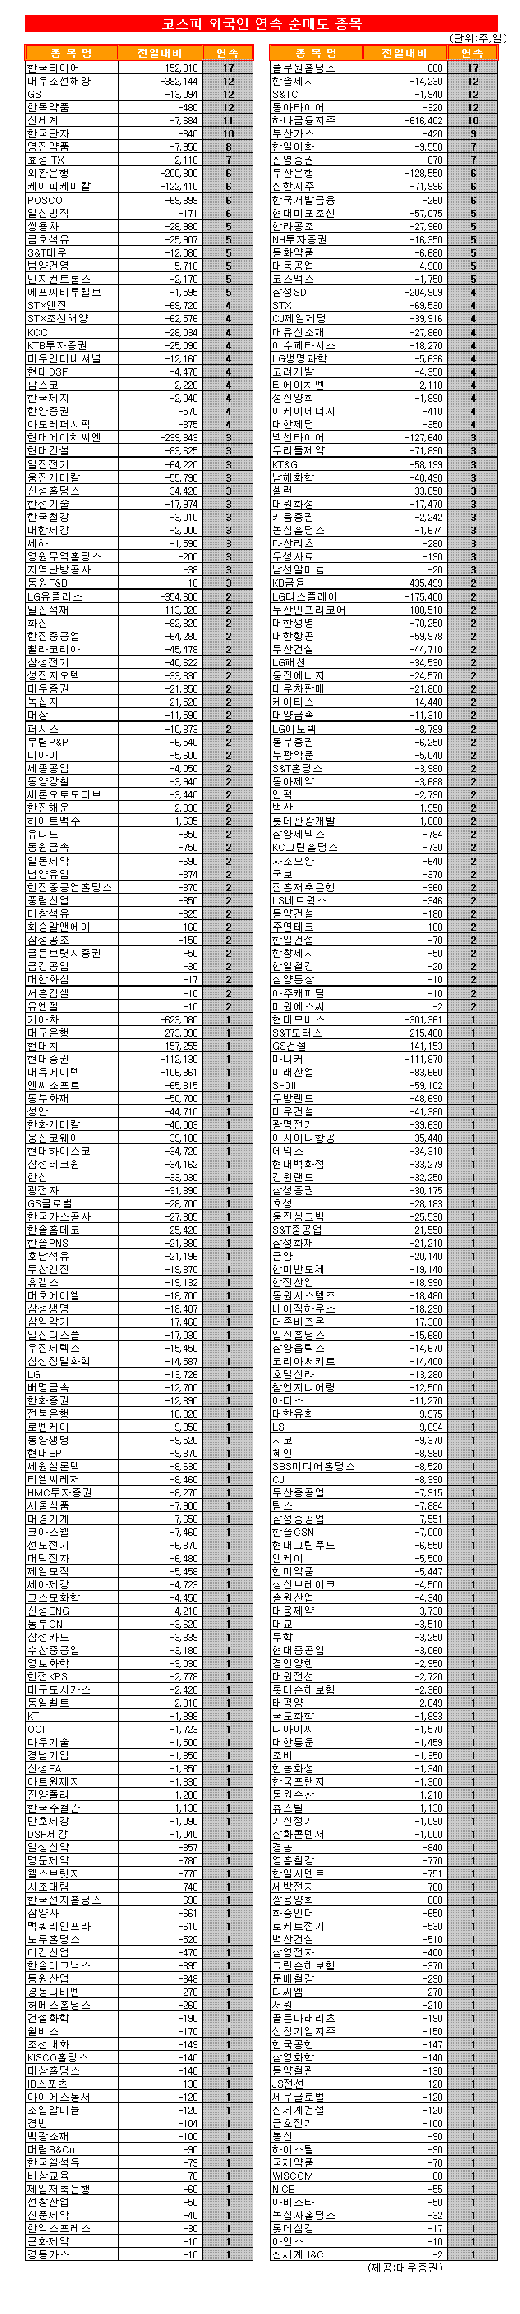 [표] 코스피 외국인 연속 순매도 종목-31일